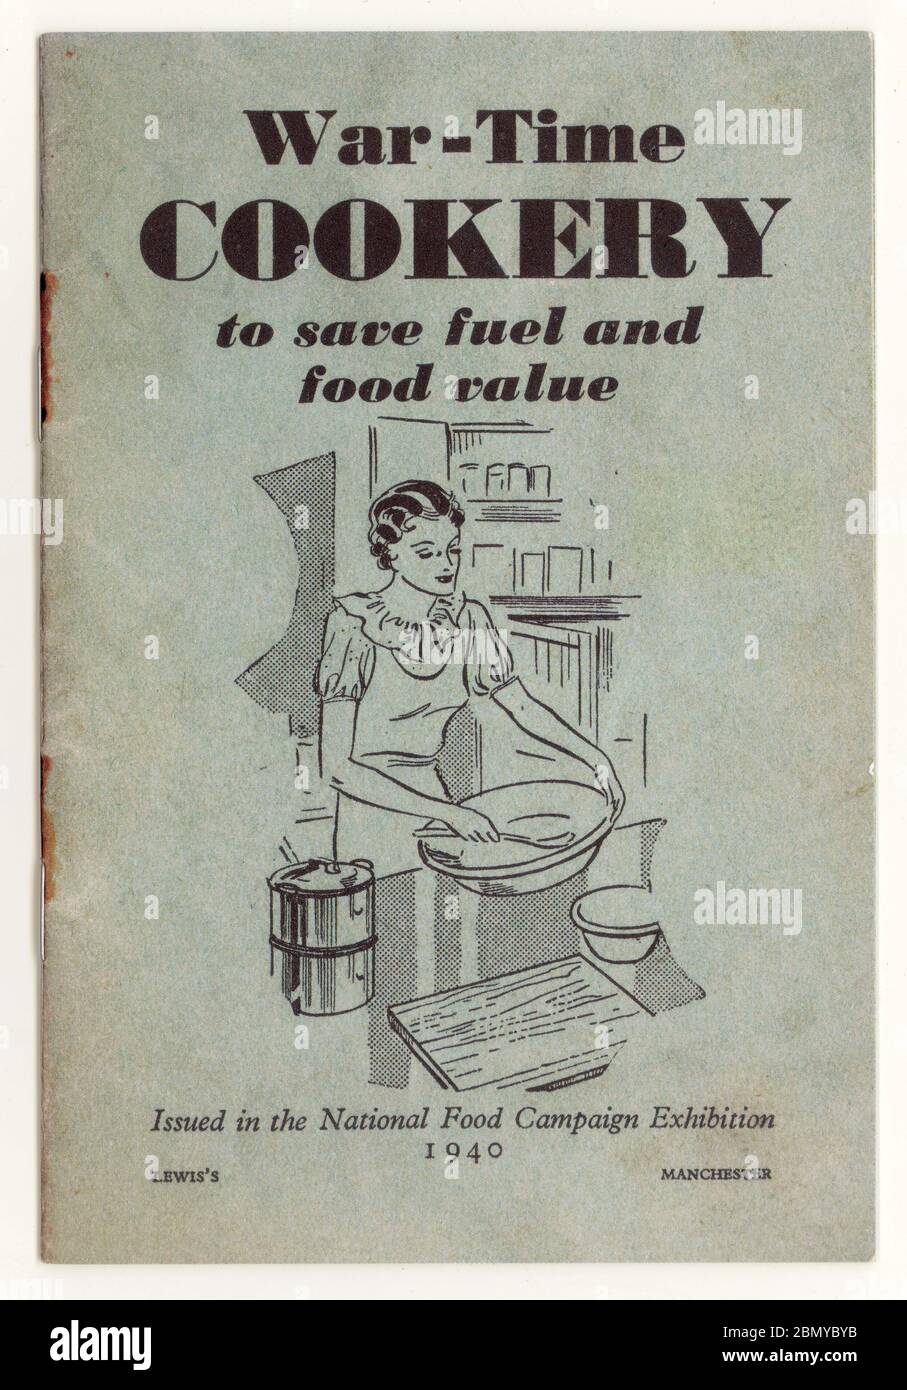 Livret de cuisine de l'époque de la guerre de la seconde Guerre mondiale daté de 1940, publié dans la National Food Campaign Exhibition, U. K Banque D'Images